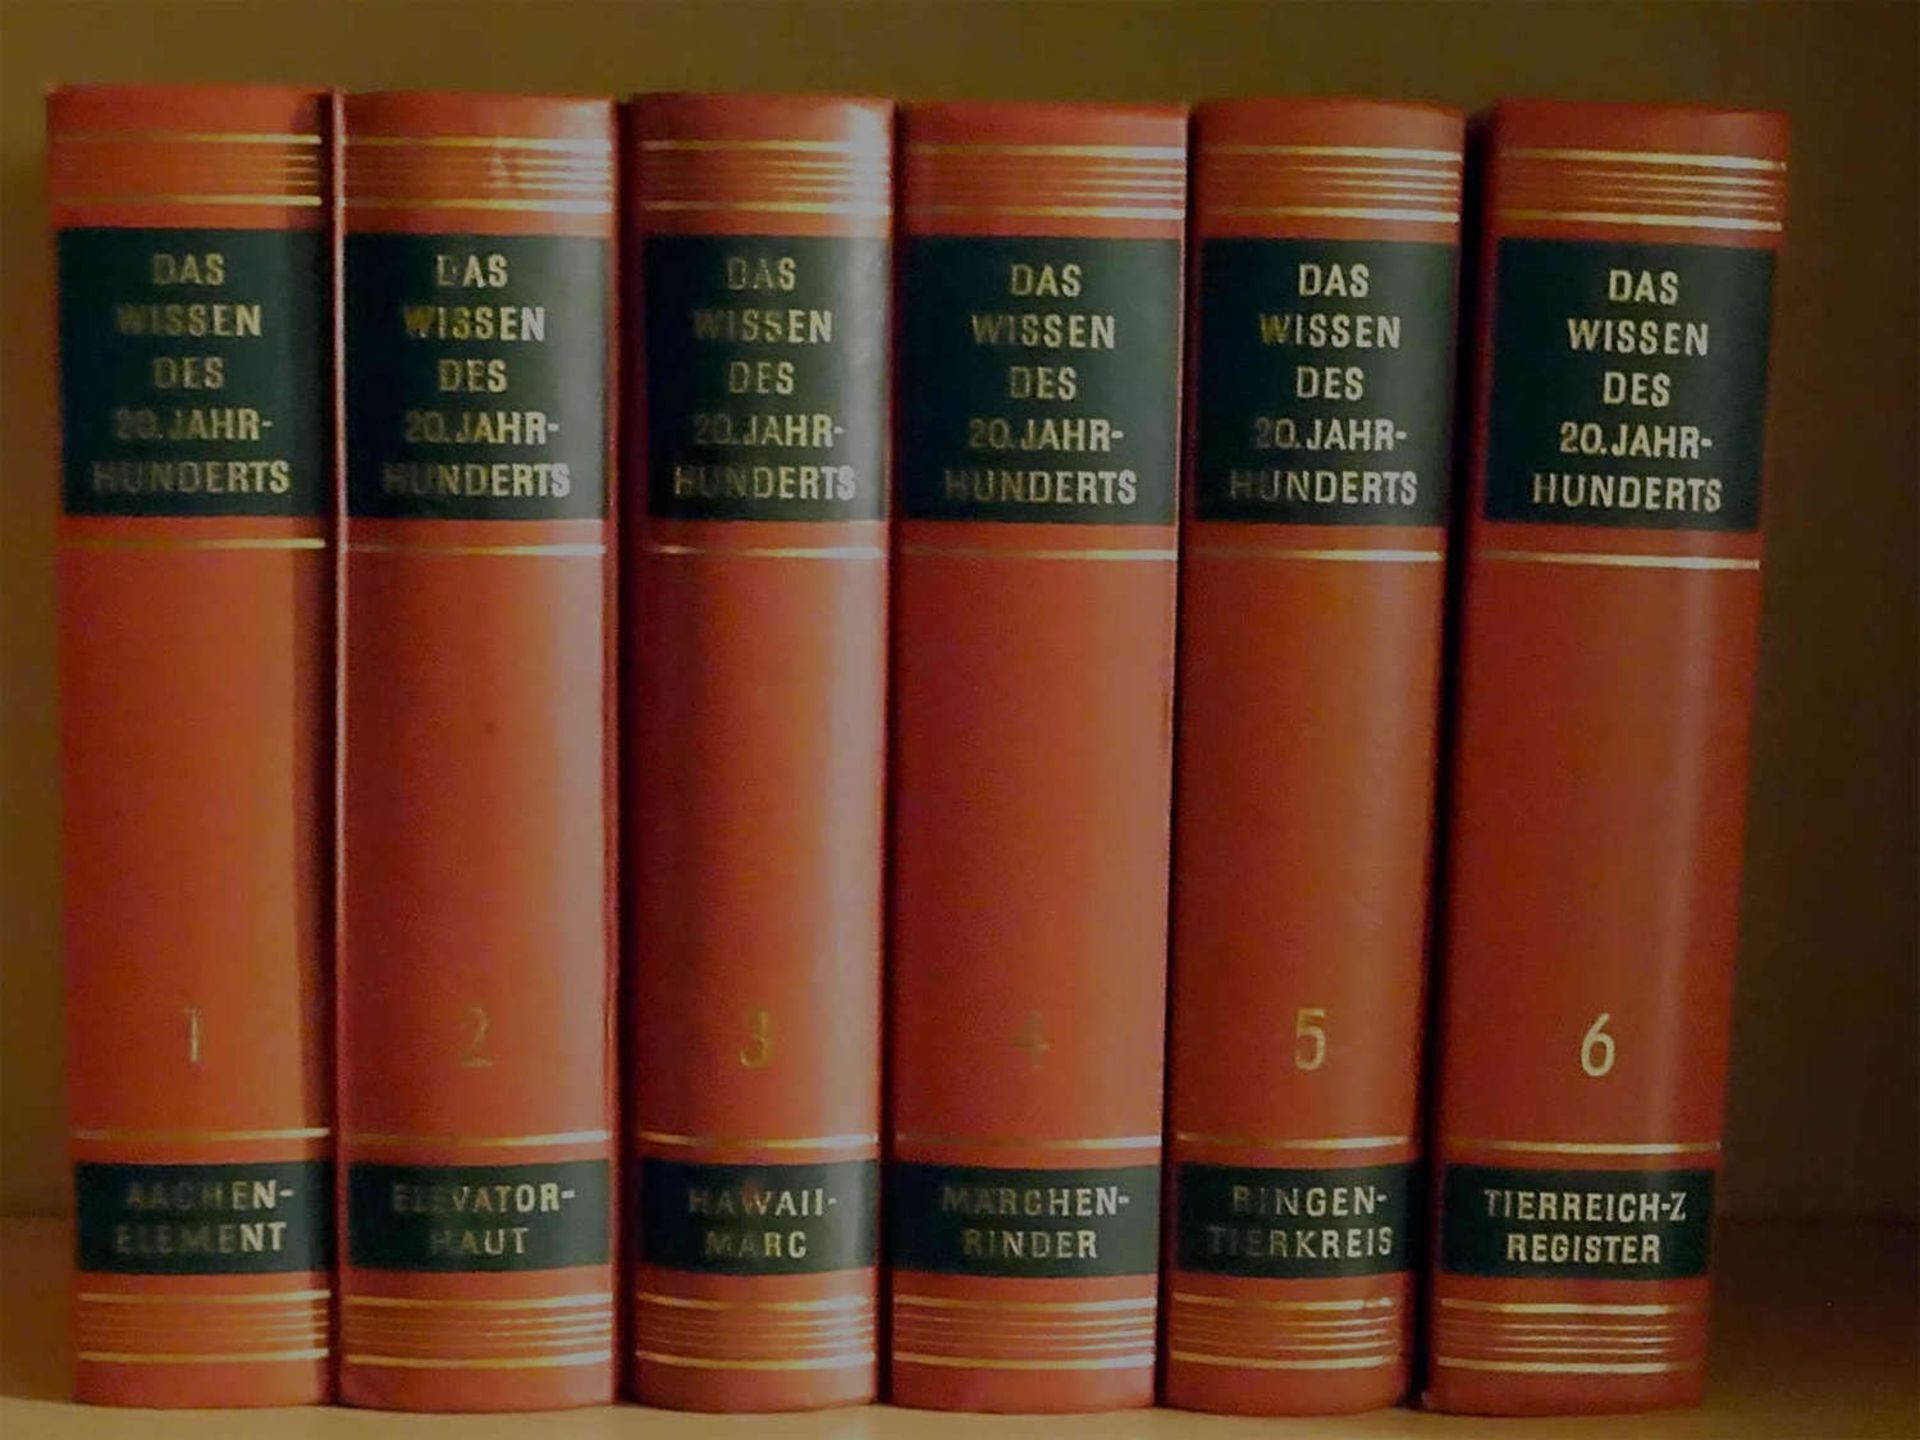 Das Wissen des 20. Jahrhunderts Band 1-6, von BorkmannThe Knowledge of the 20th Century Volume 1-